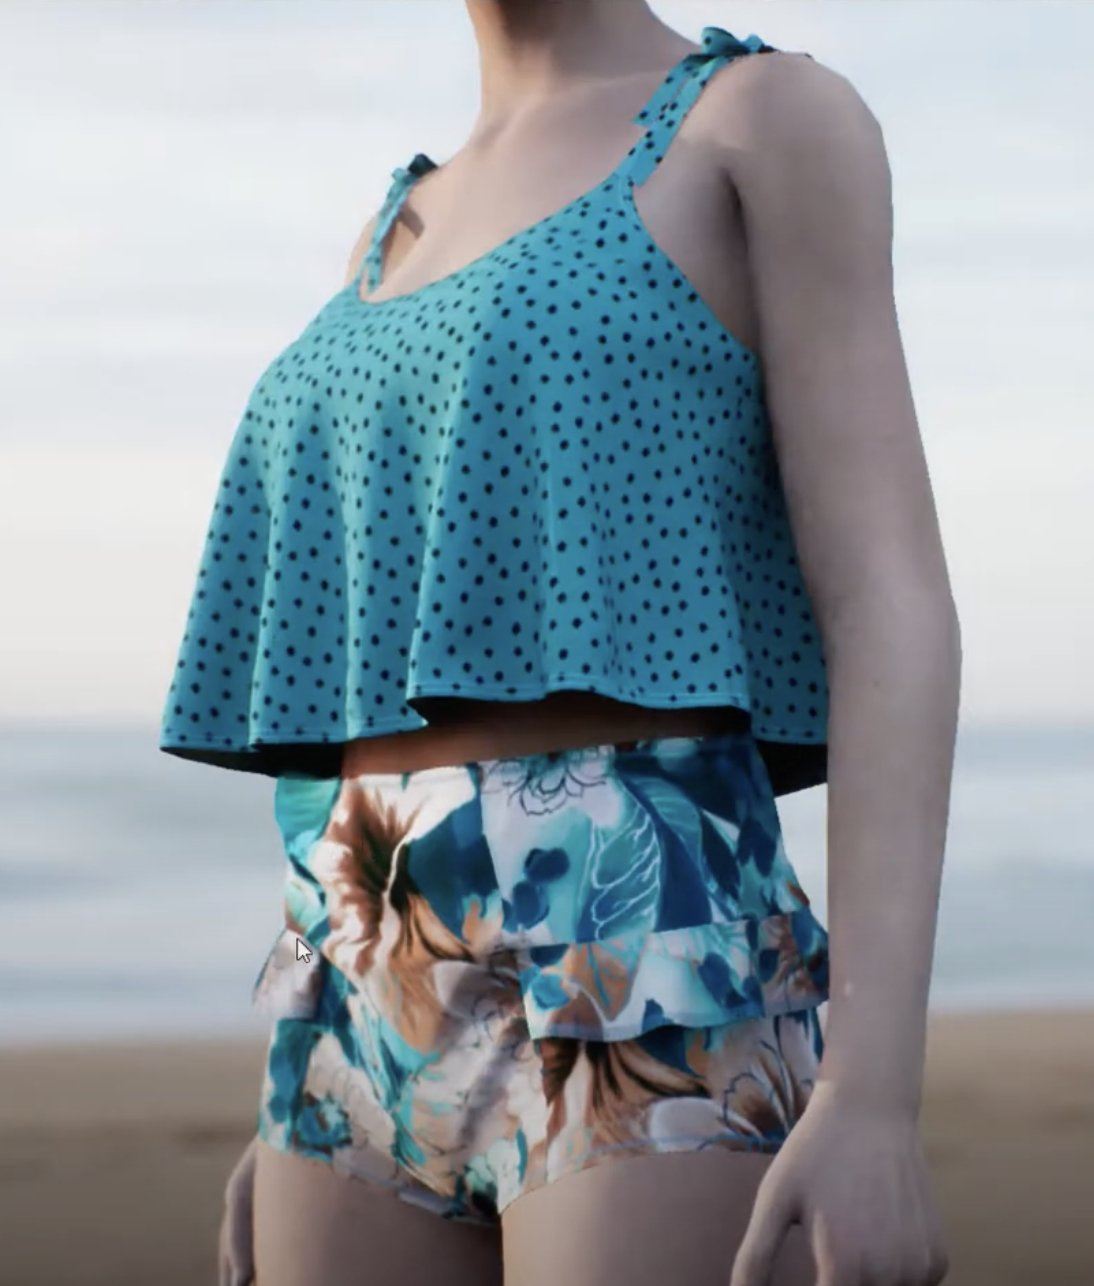 PDF "Dani" Swim Top Sewing Pattern Sizes XS-L-Stitch Love Studio